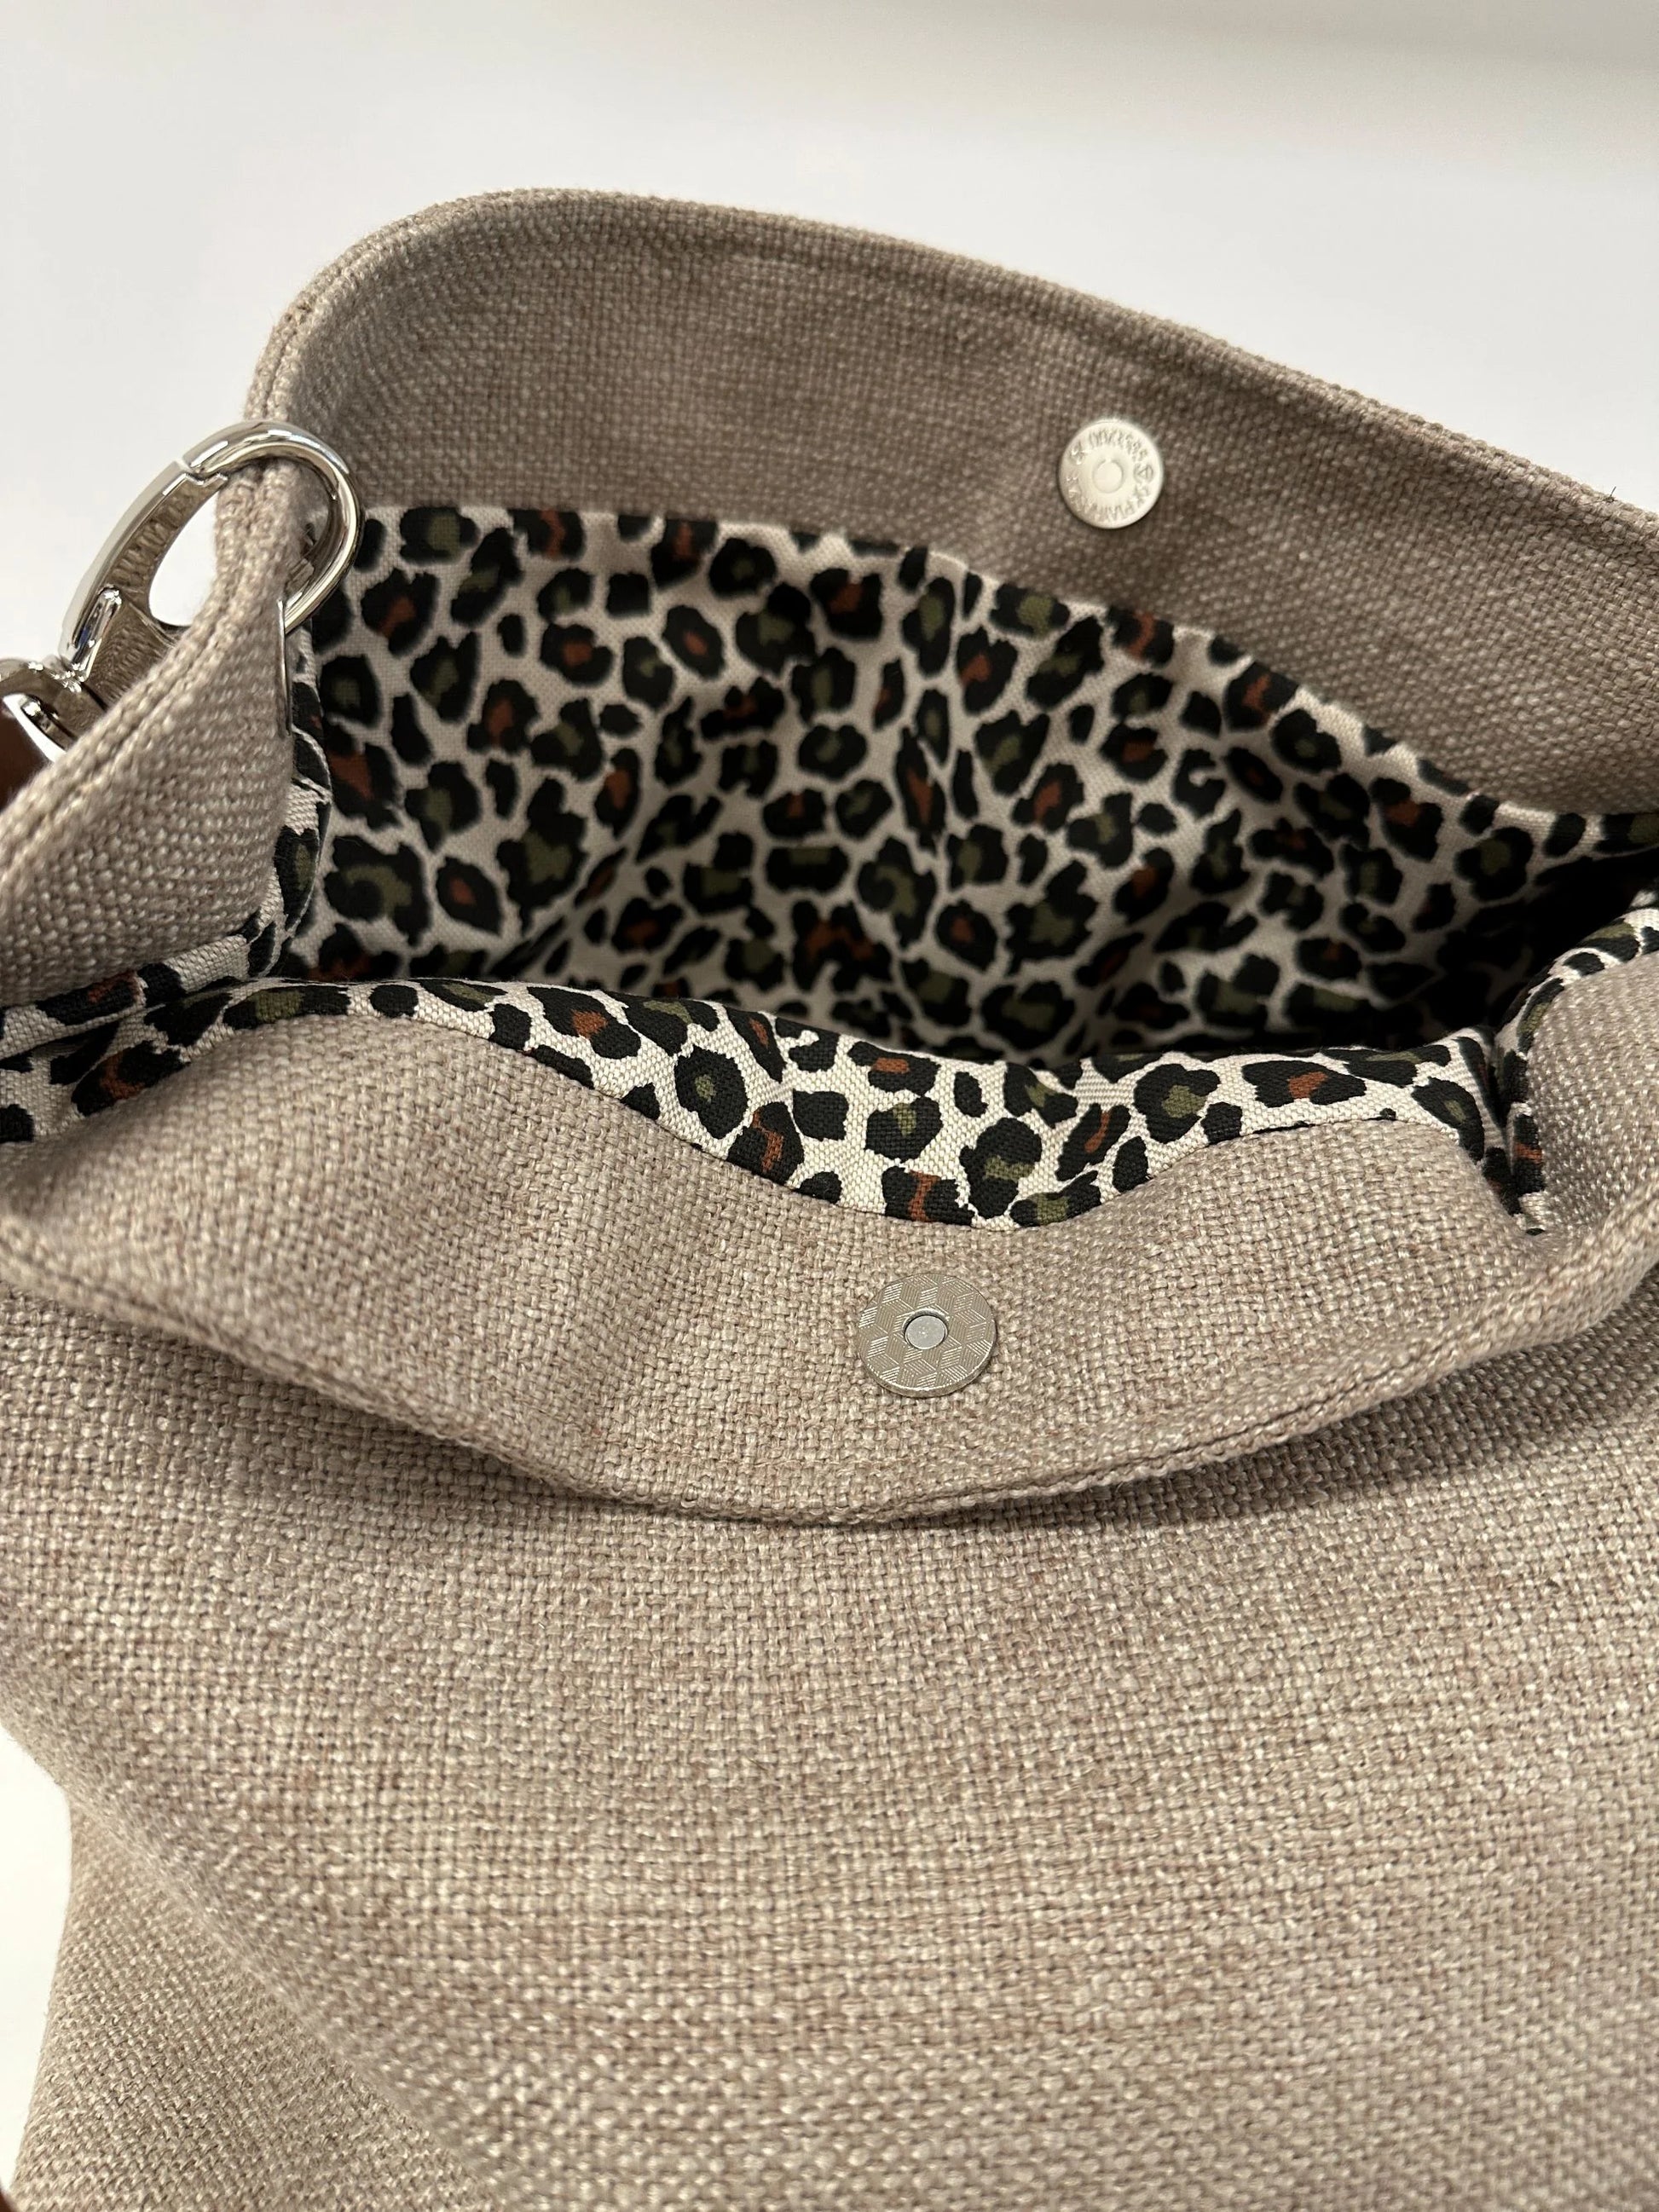 La toile léopard intérieure du sac hobo en lin beige et toile léopard, avec son anse en cuir marron amovible.